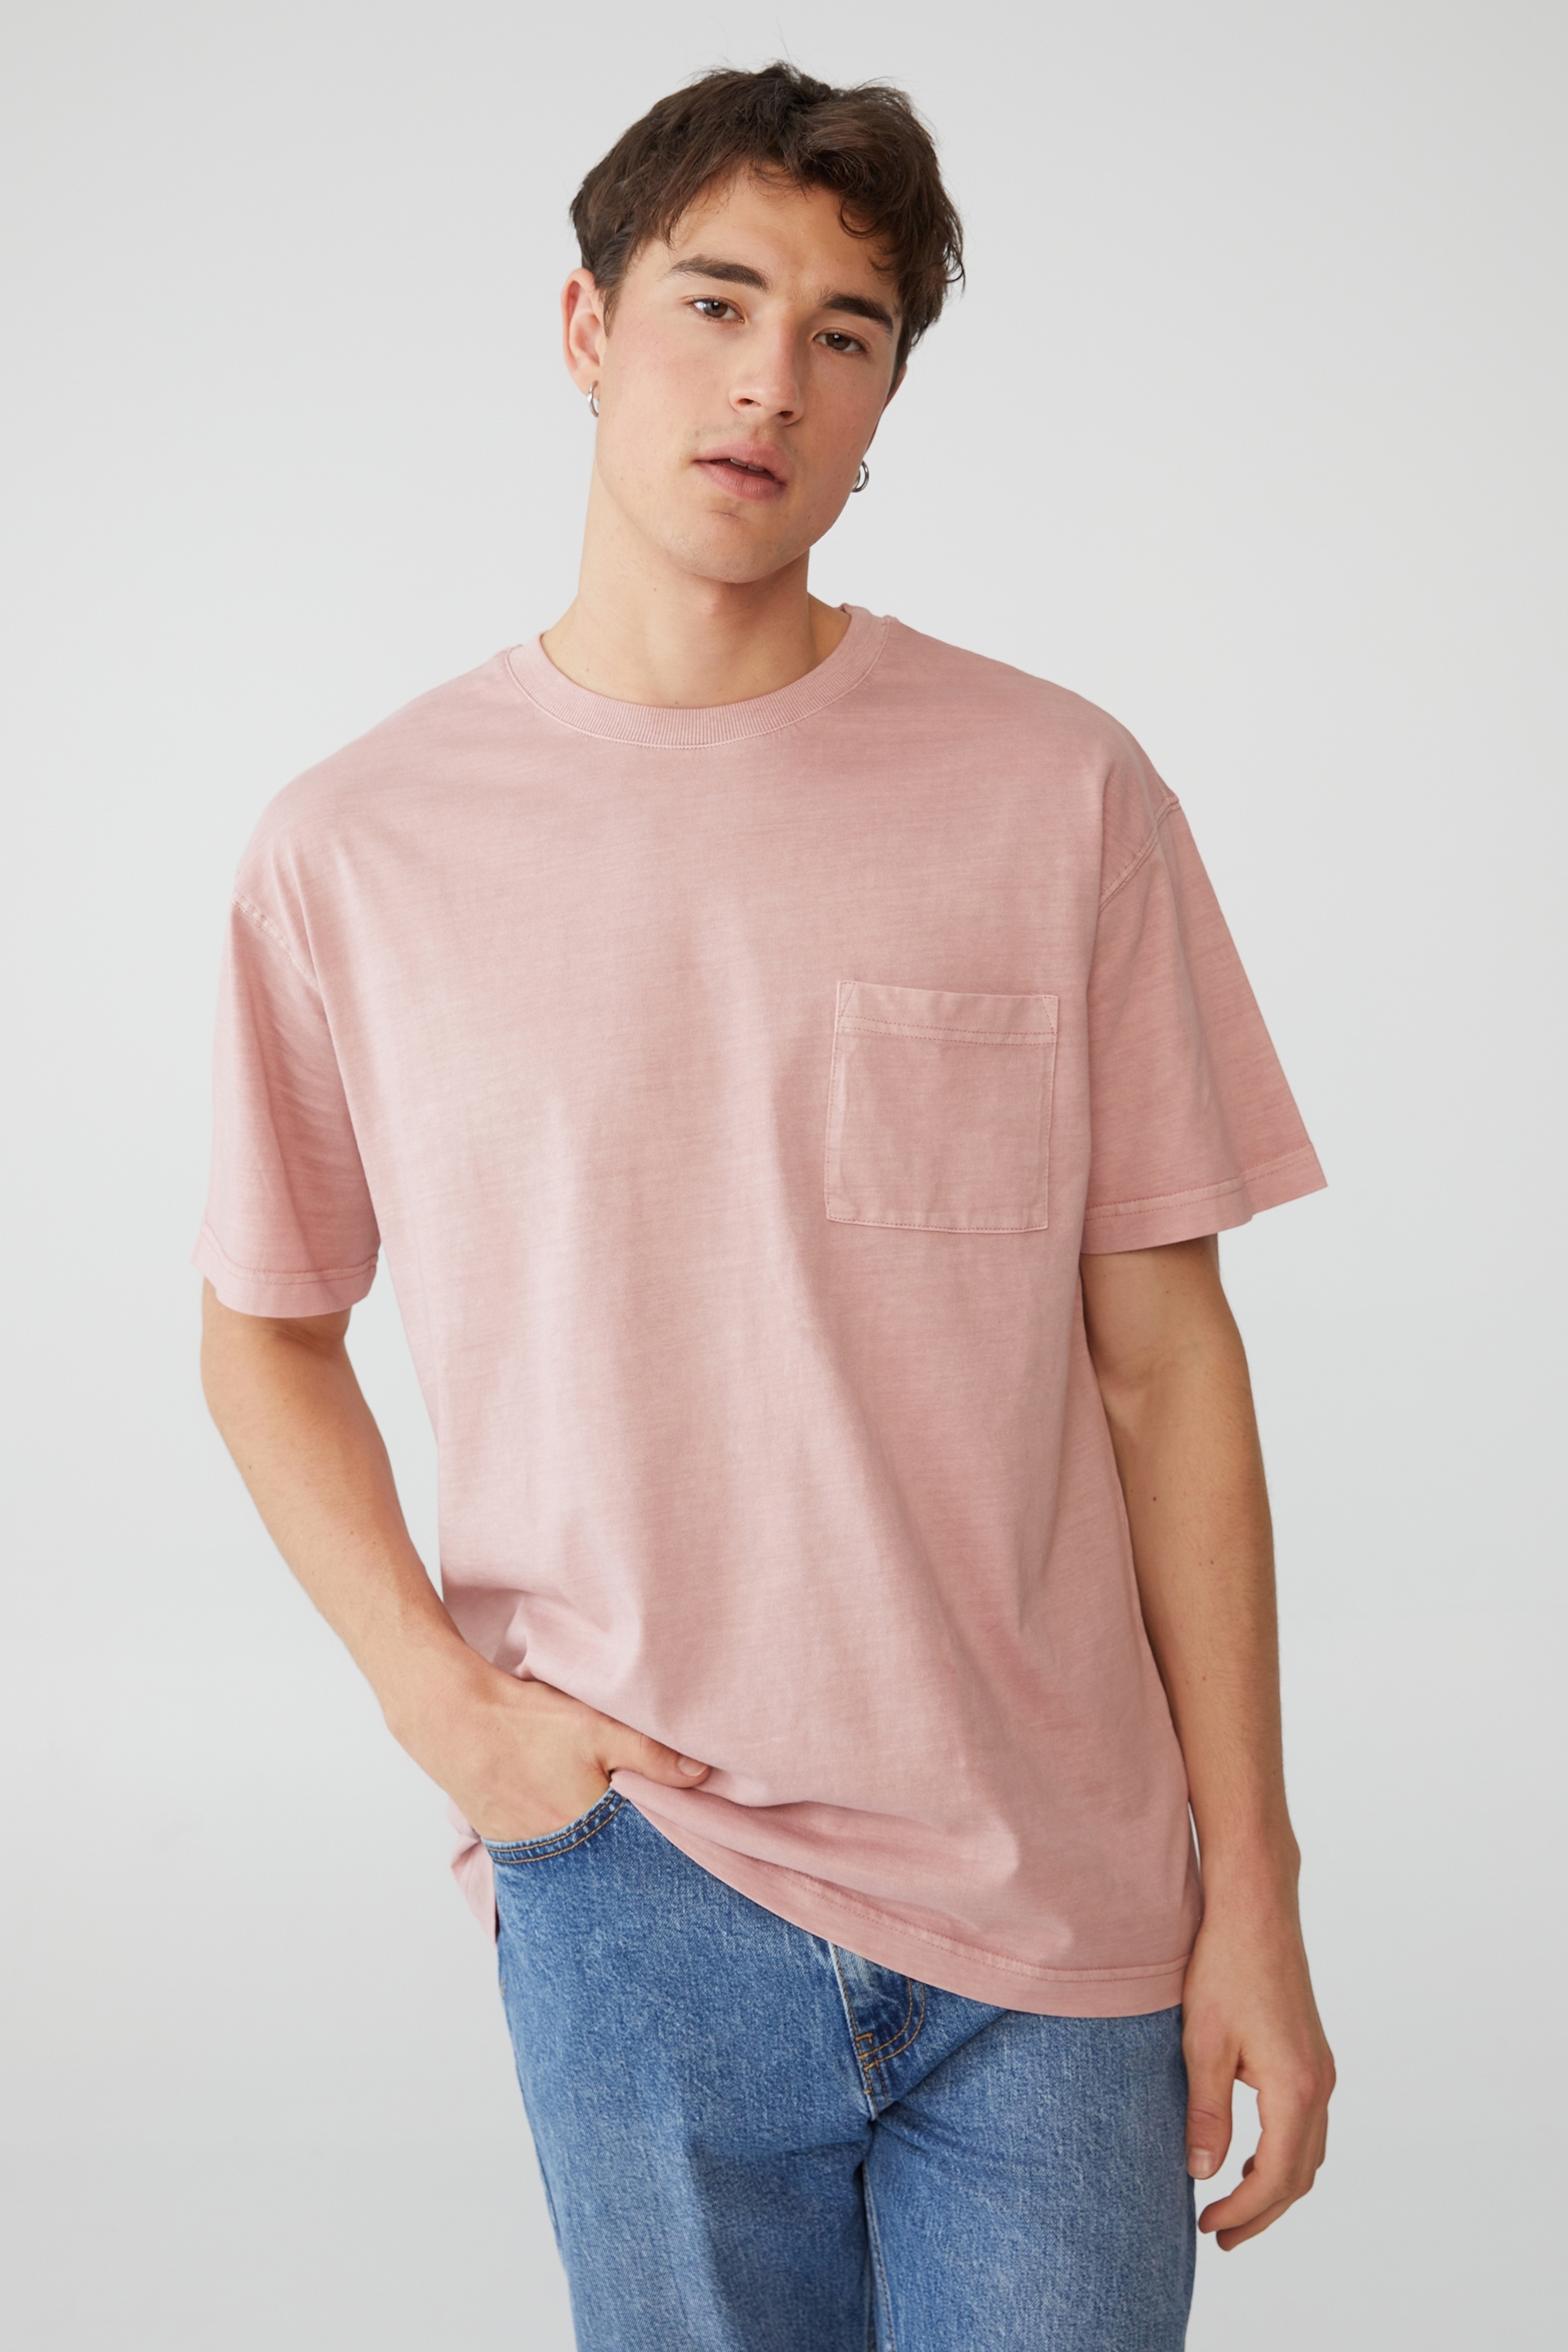 Cotton On Men - Loose Fit T-Shirt - Plum